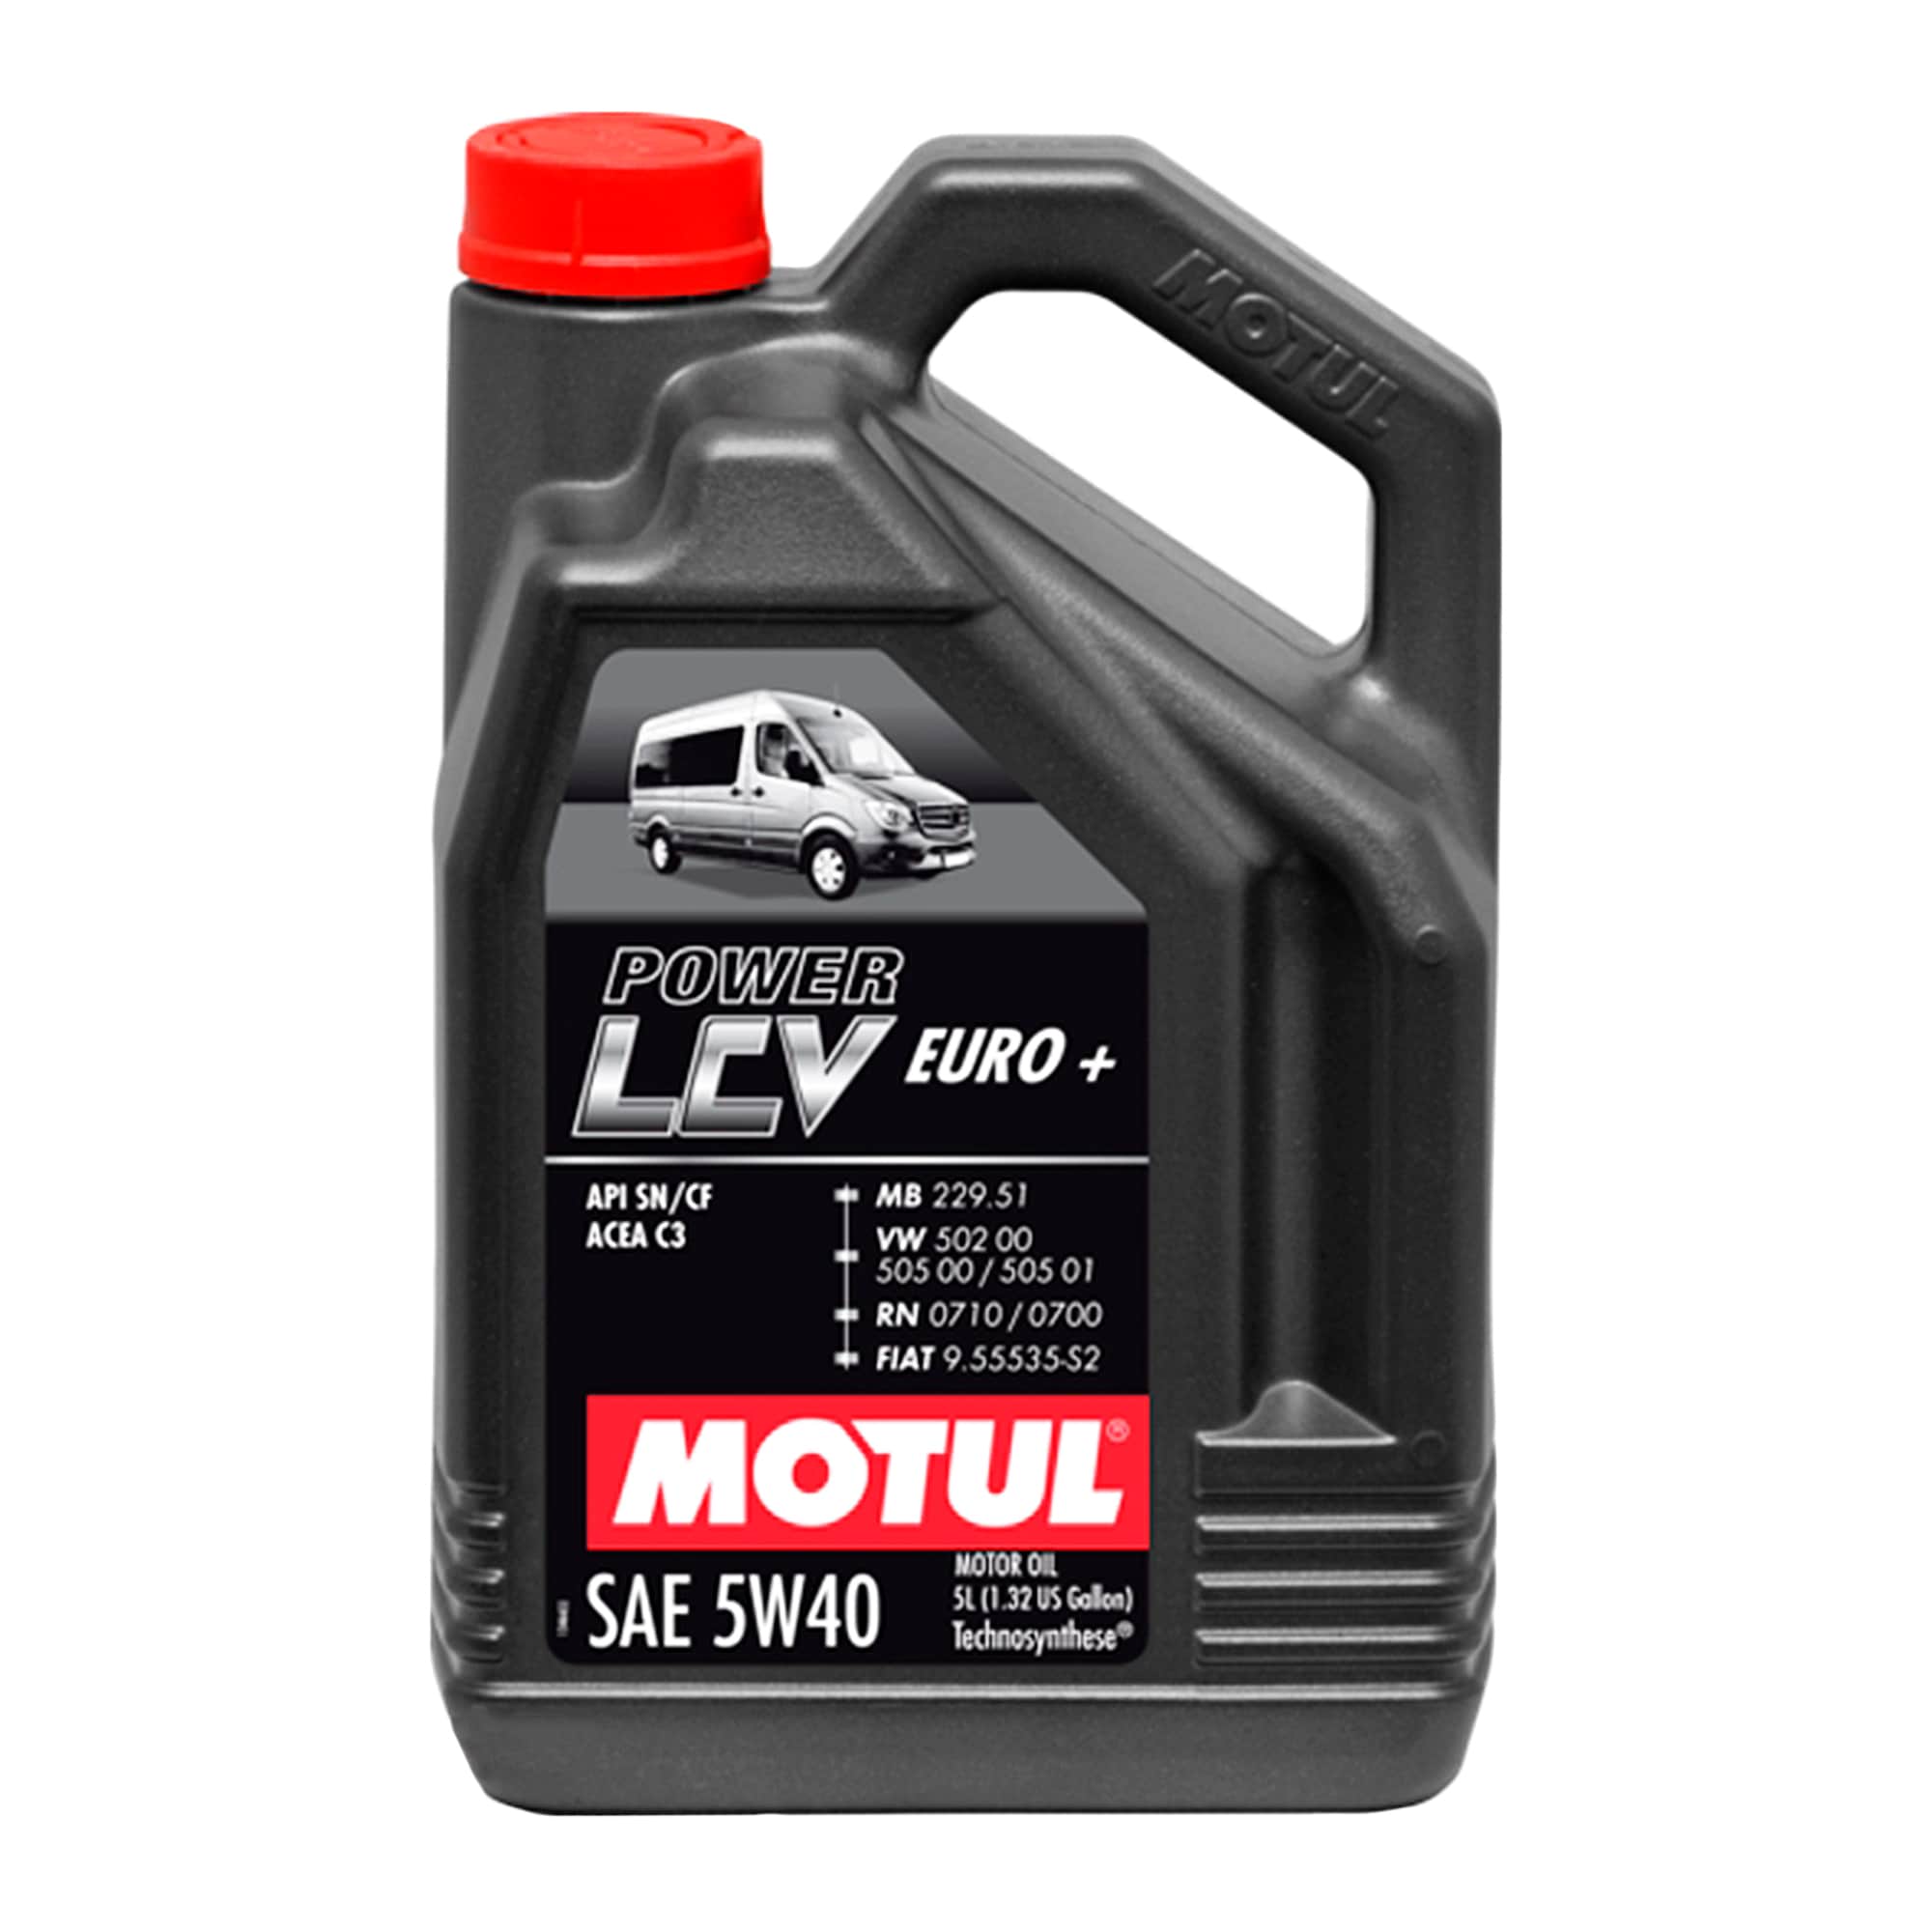 Моторное масло MOTUL Power LCV Euro+ 5W-40, 5 литров 5W40 (872151 / 106132)